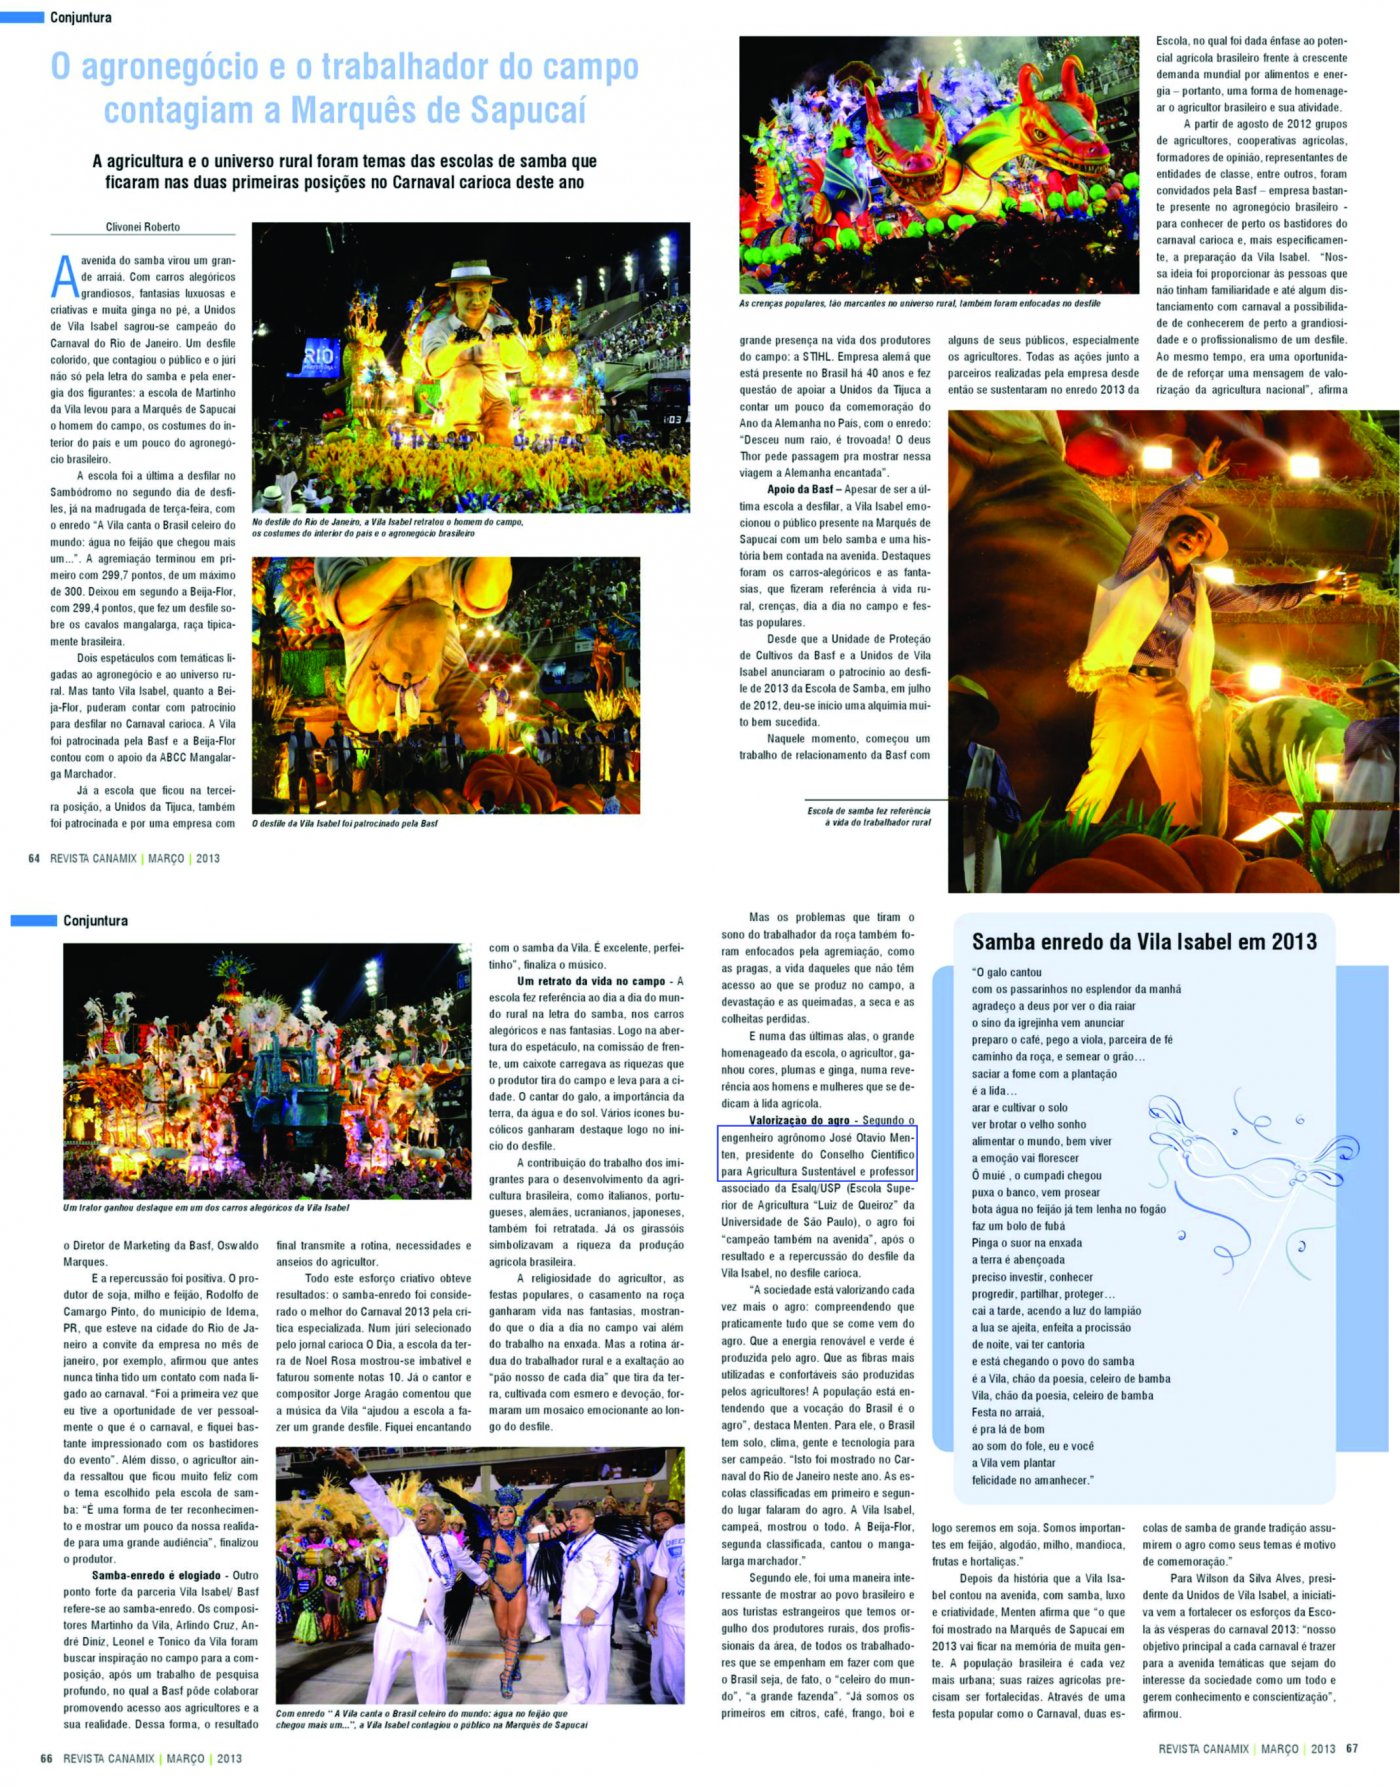 Revista Canamix publica matéria sobre o agro no Carnaval 2013 com declaração do presidente do CCAS